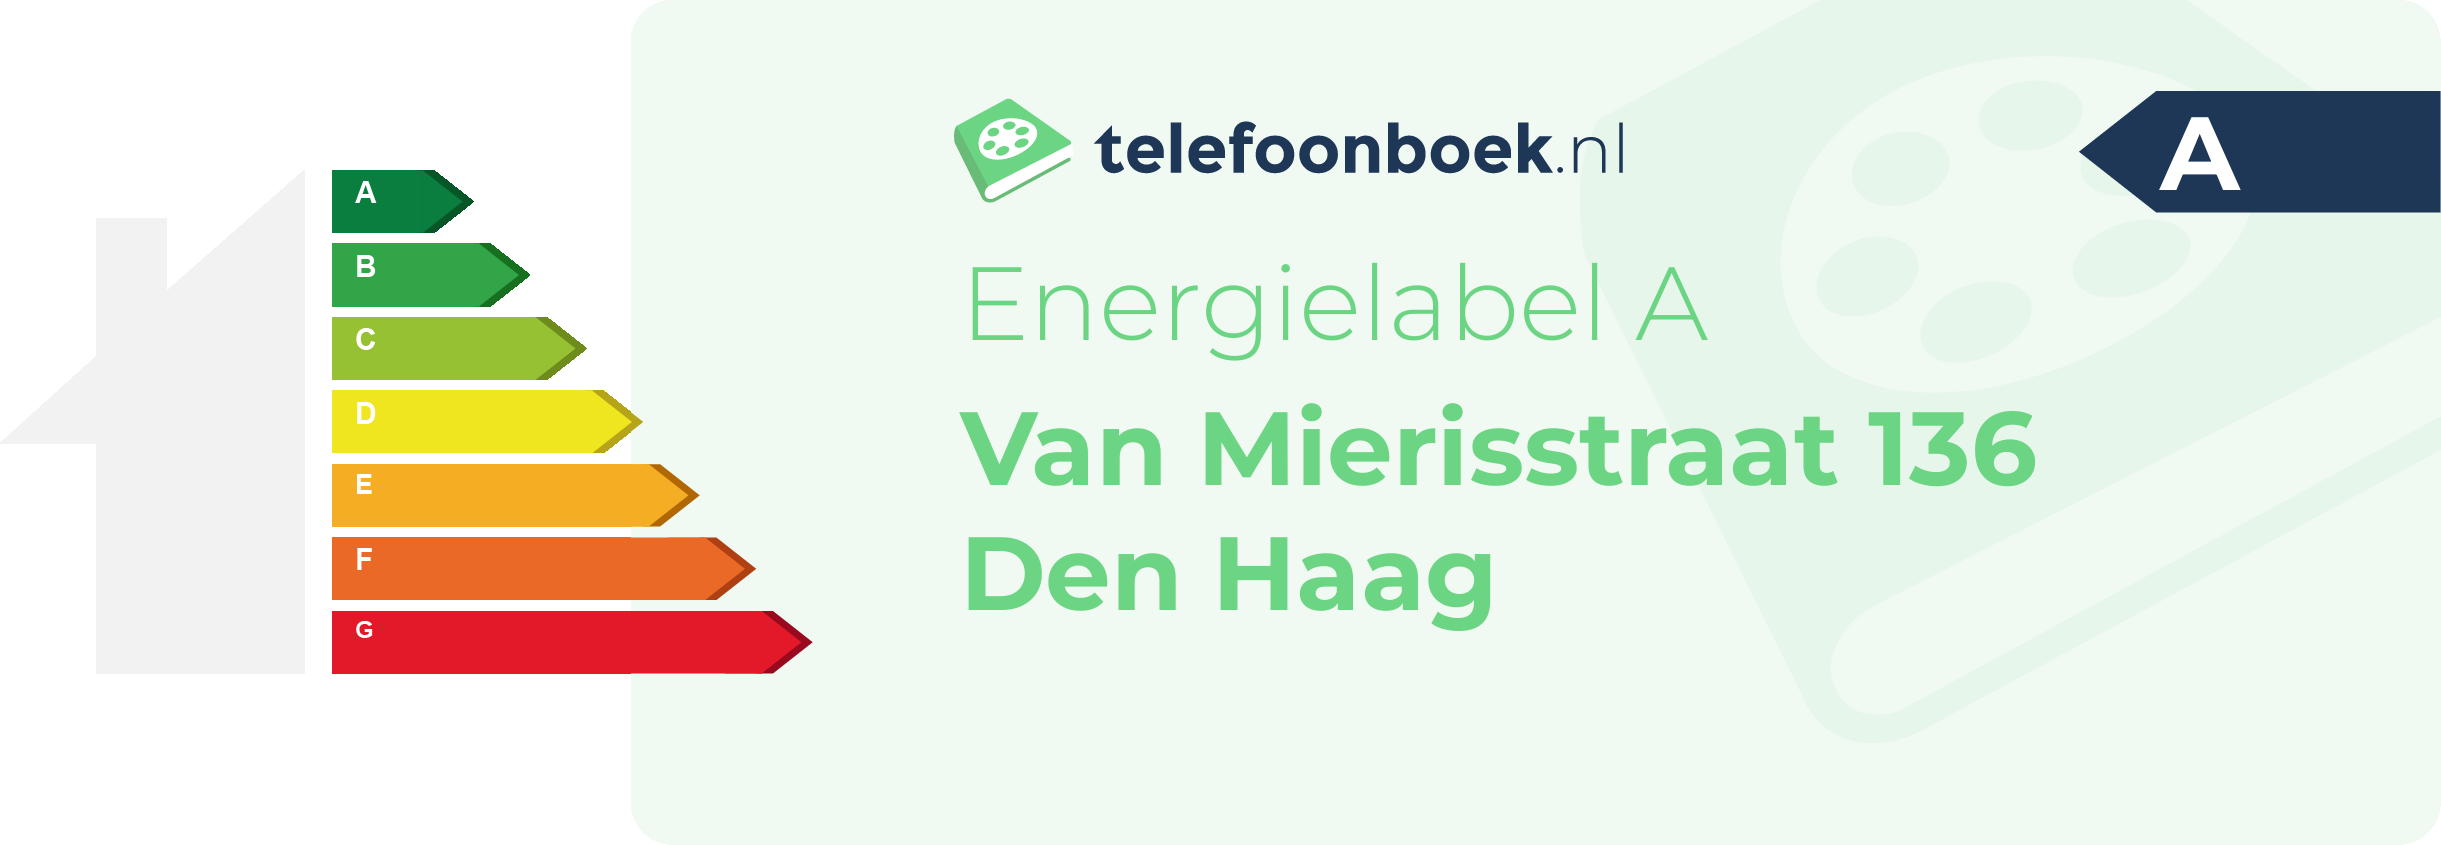 Energielabel Van Mierisstraat 136 Den Haag